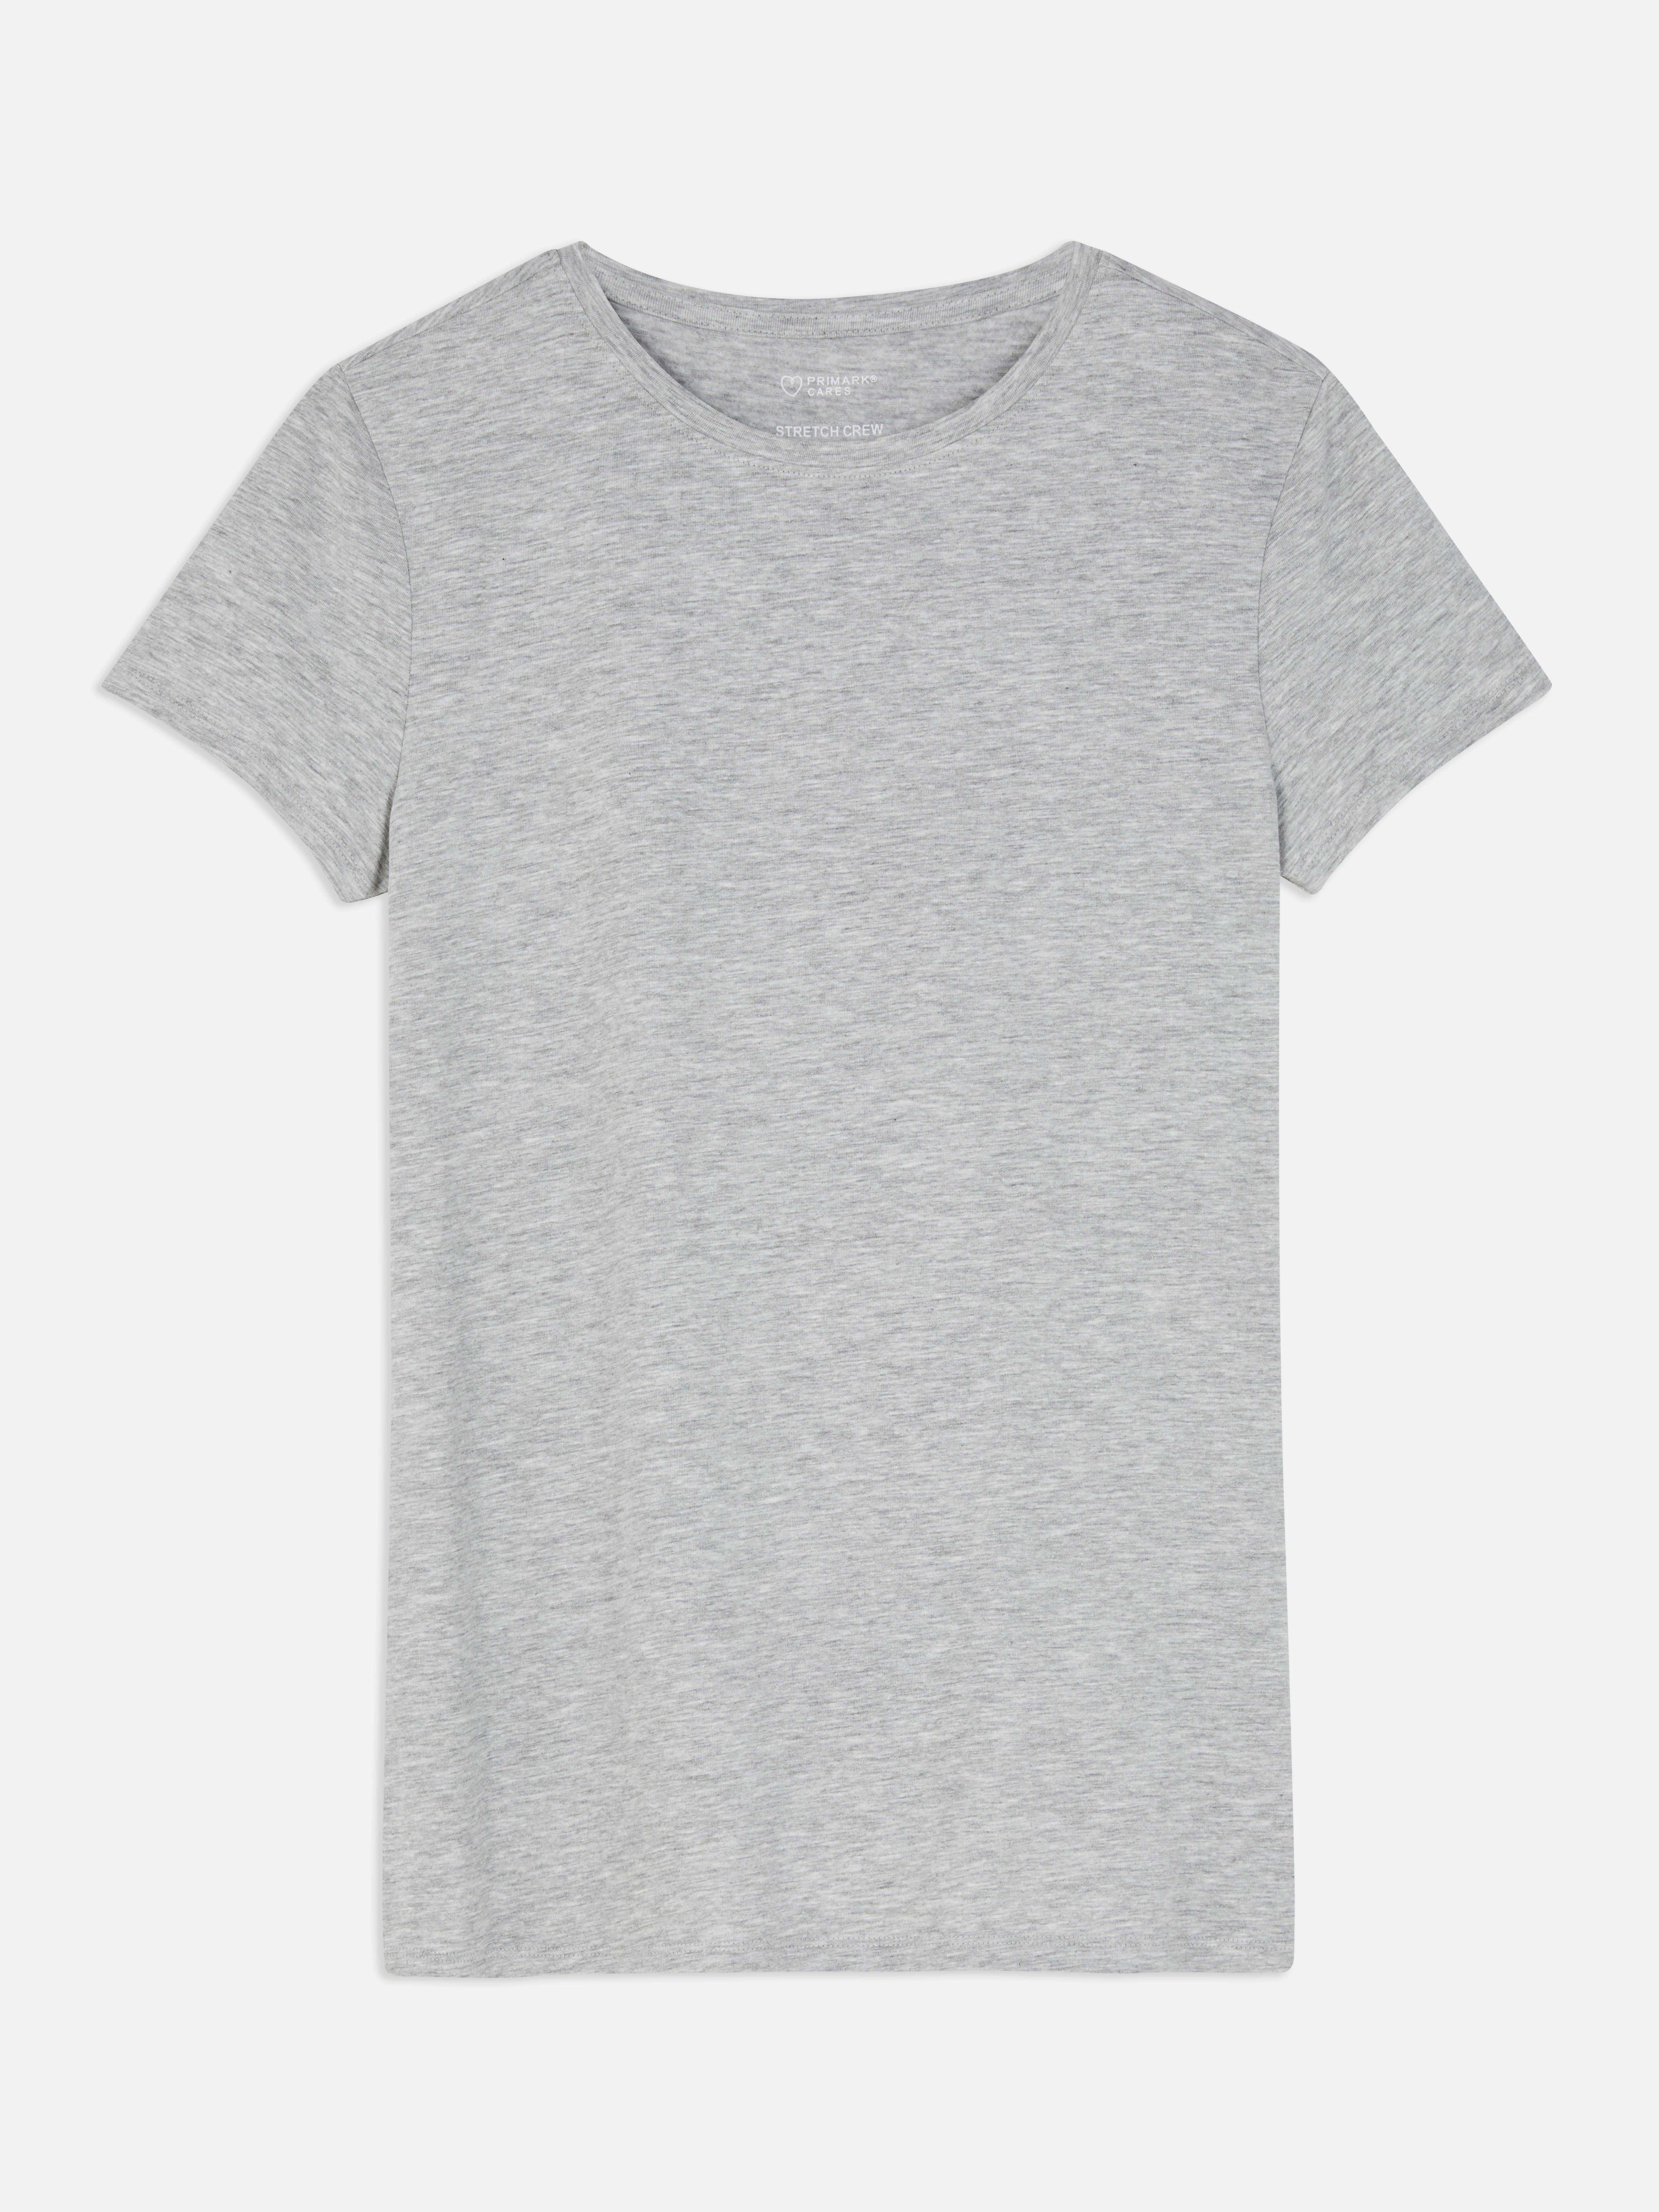 Camisetas mujer | Camisetas grandes y cortas | Primark